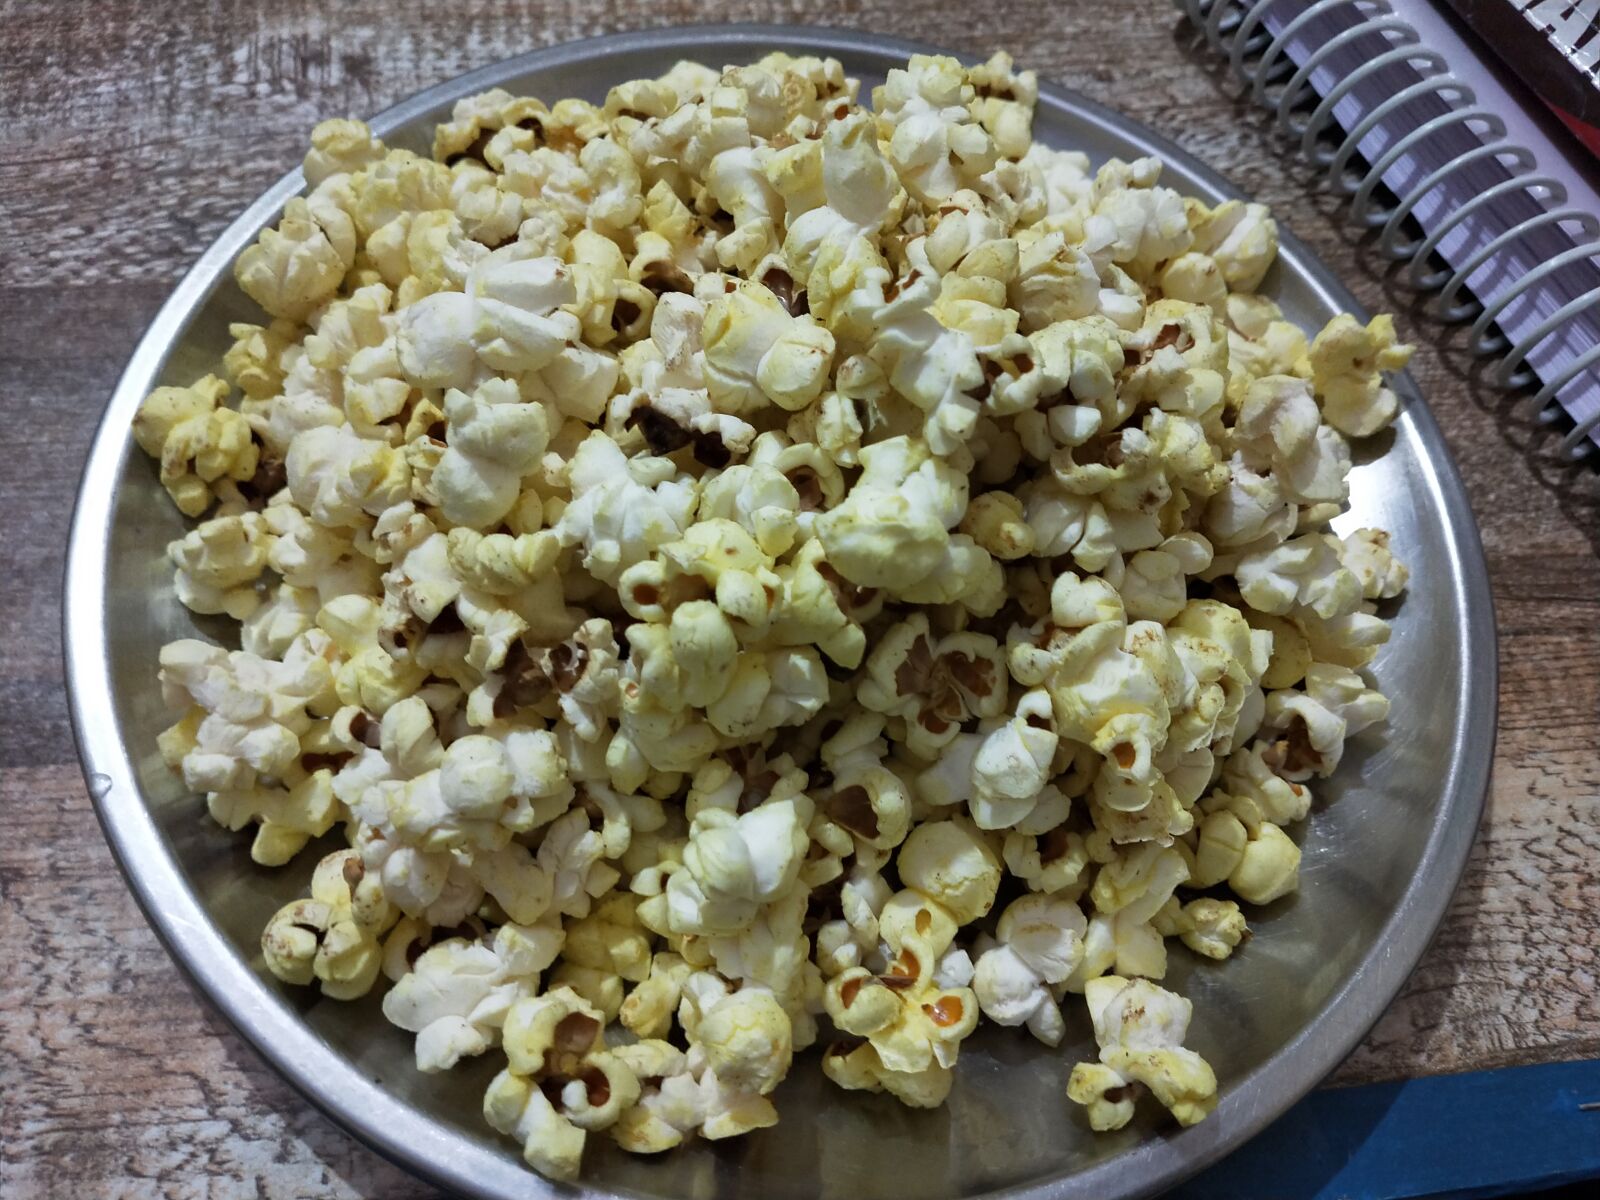 OPPO Realme 2 Pro sample photo. Popcorns, corns, corn photography